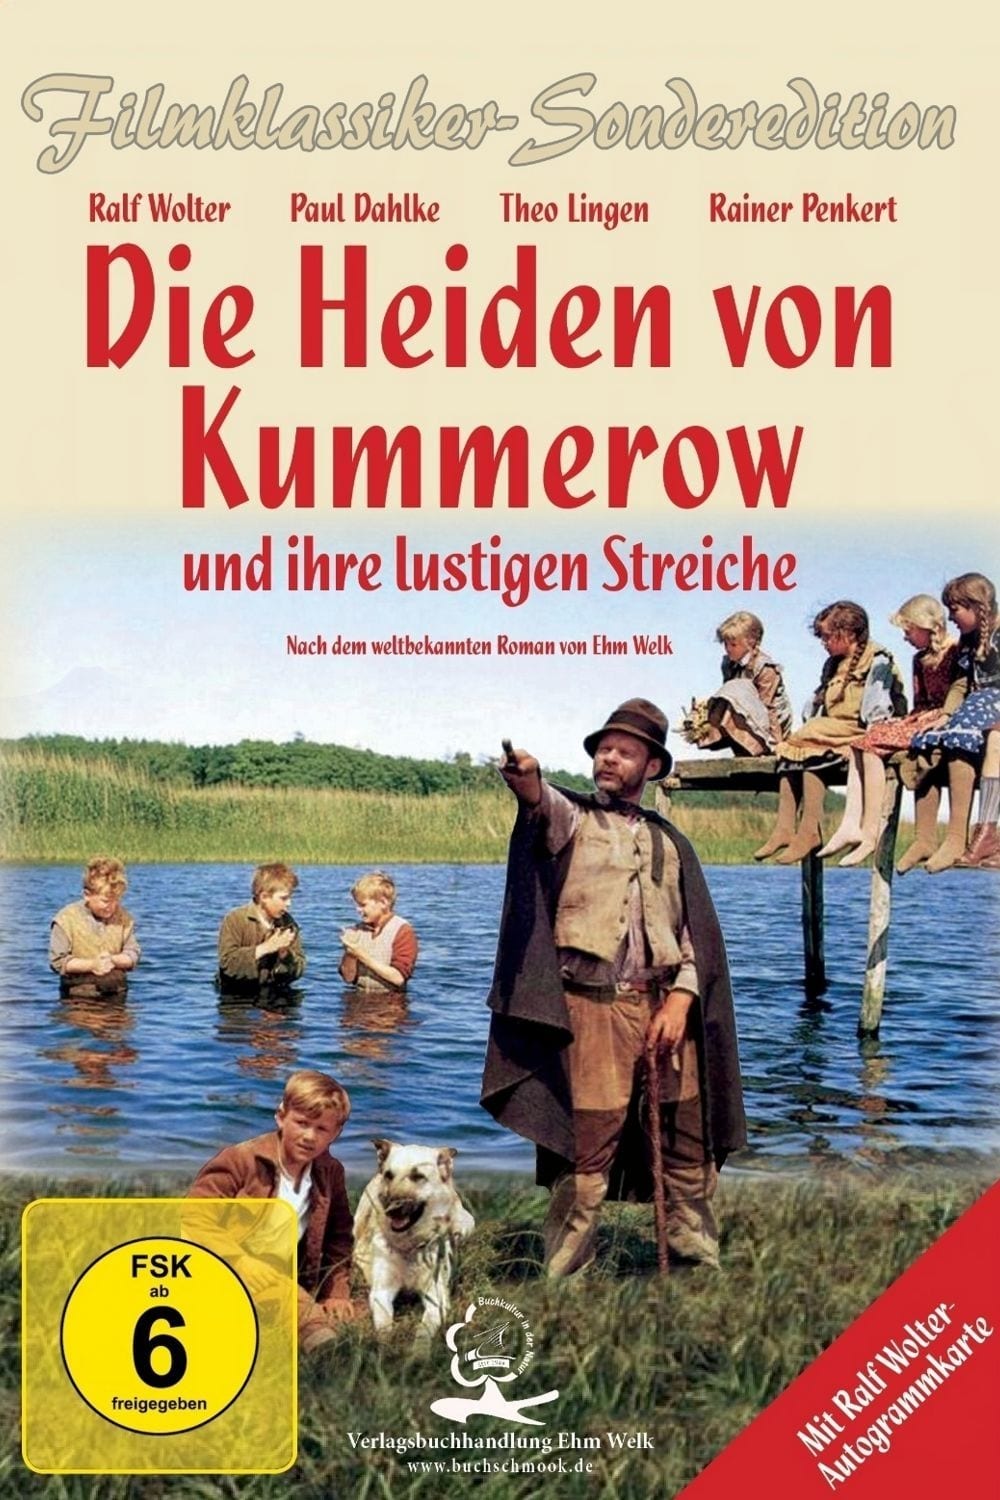 The Heathens of Kummerow (1967)